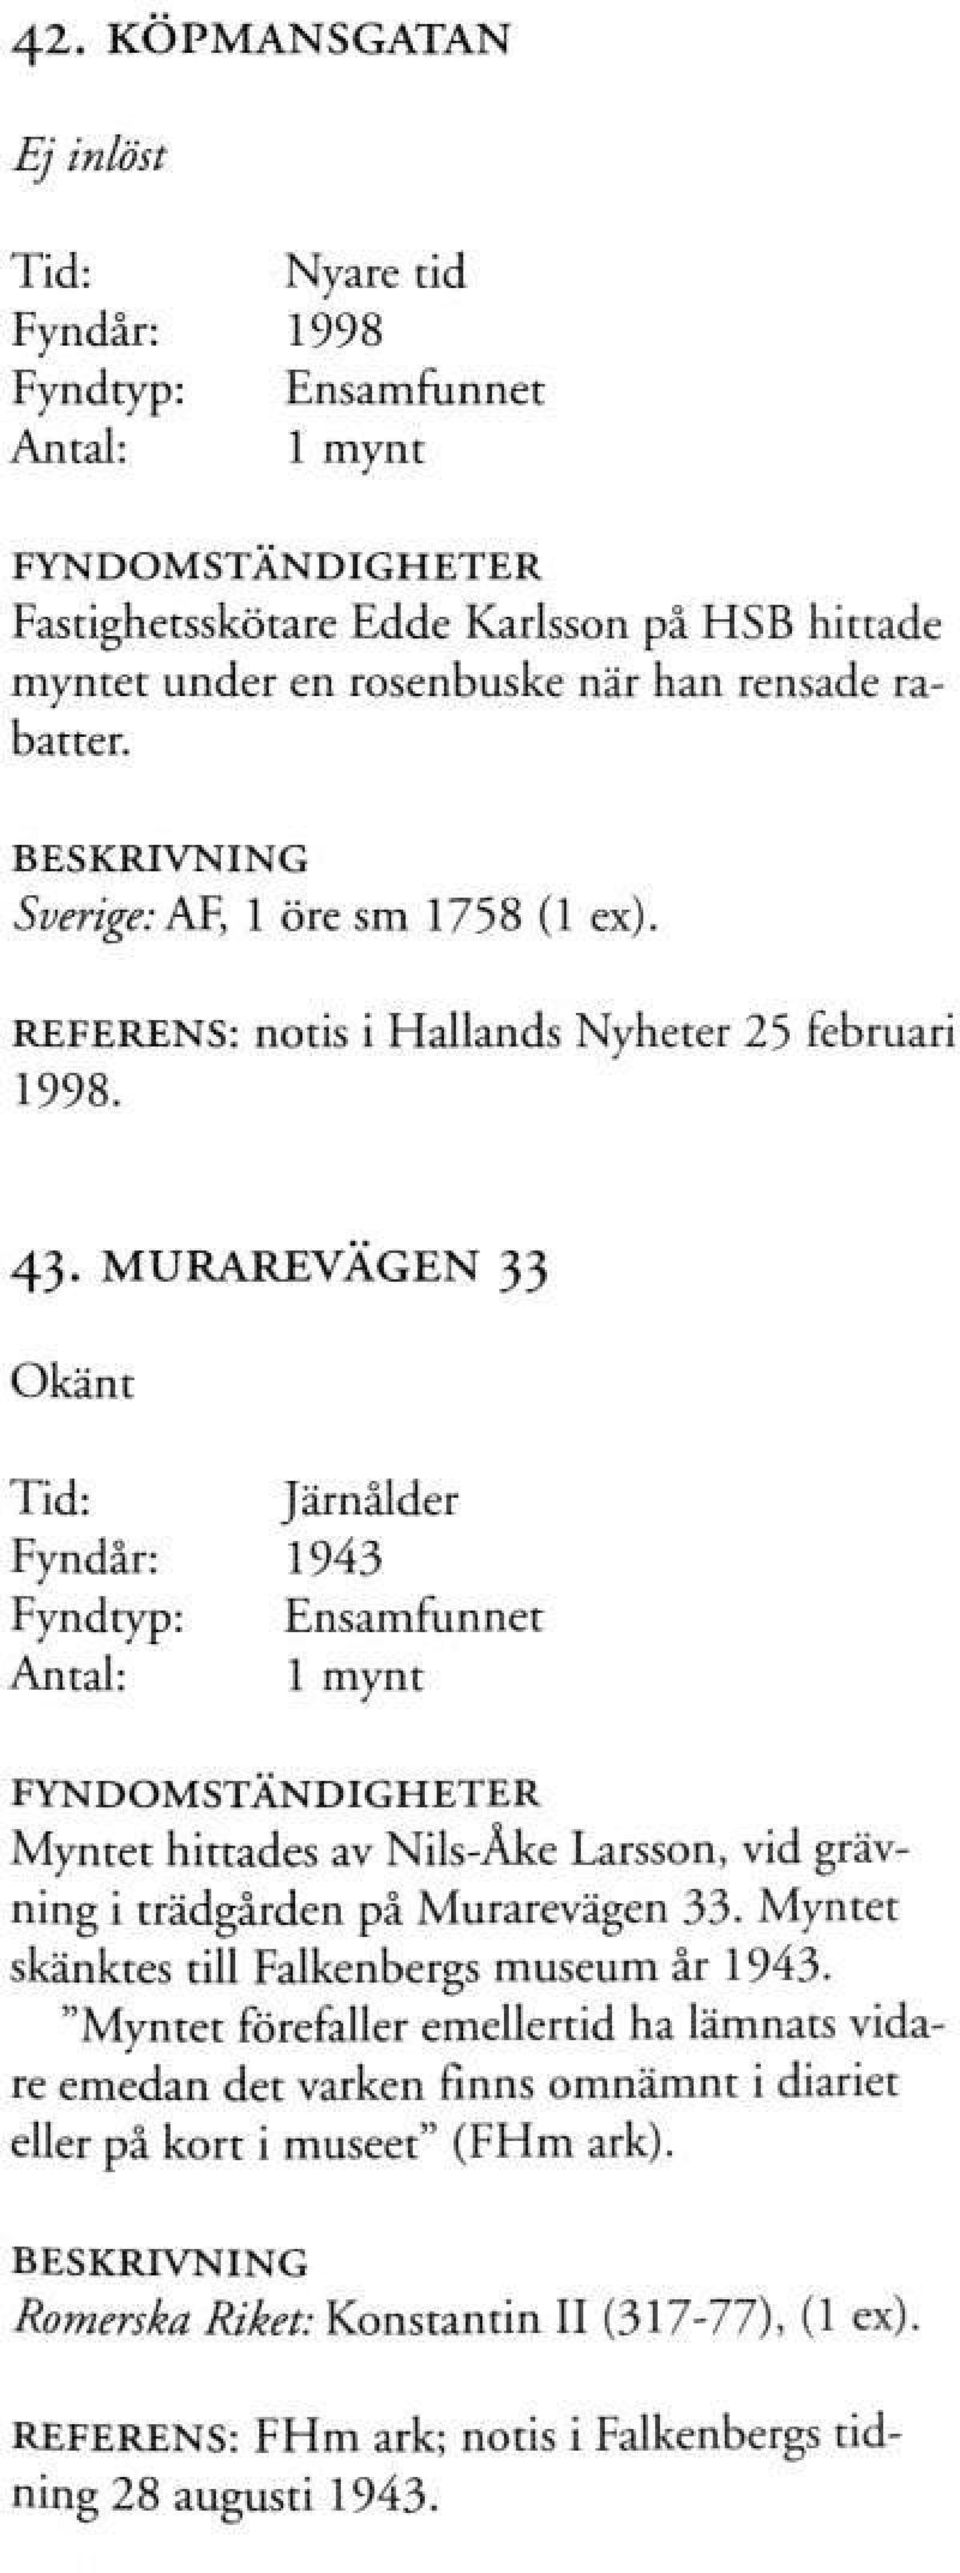 MURAREVÄGEN 33 Okänt Tid: Järnålder Fyndår: 1943 Myntet hittades av Nils-Åke Larsson, vid grävning i trädgården på Murarevägen 33.